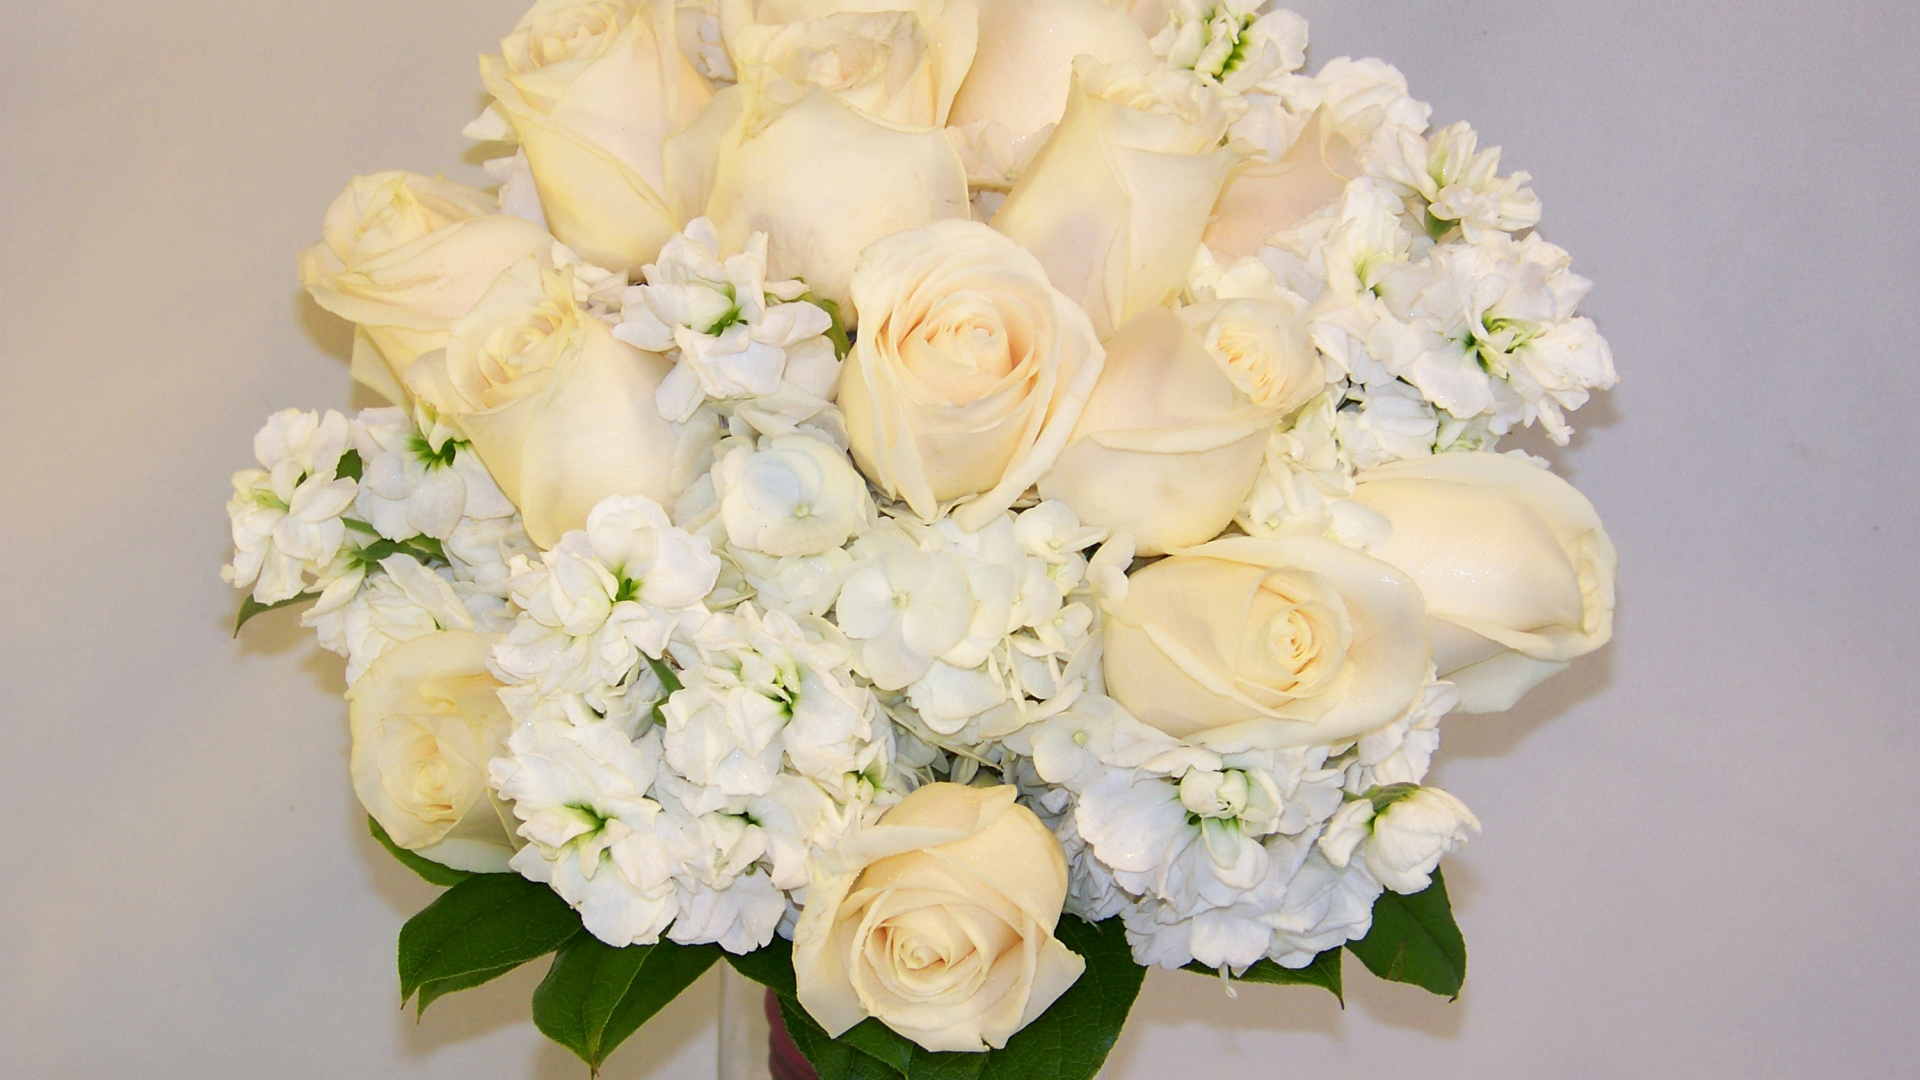 Красивый нежный букет с белыми розами и цветами гортензии на сером фоне